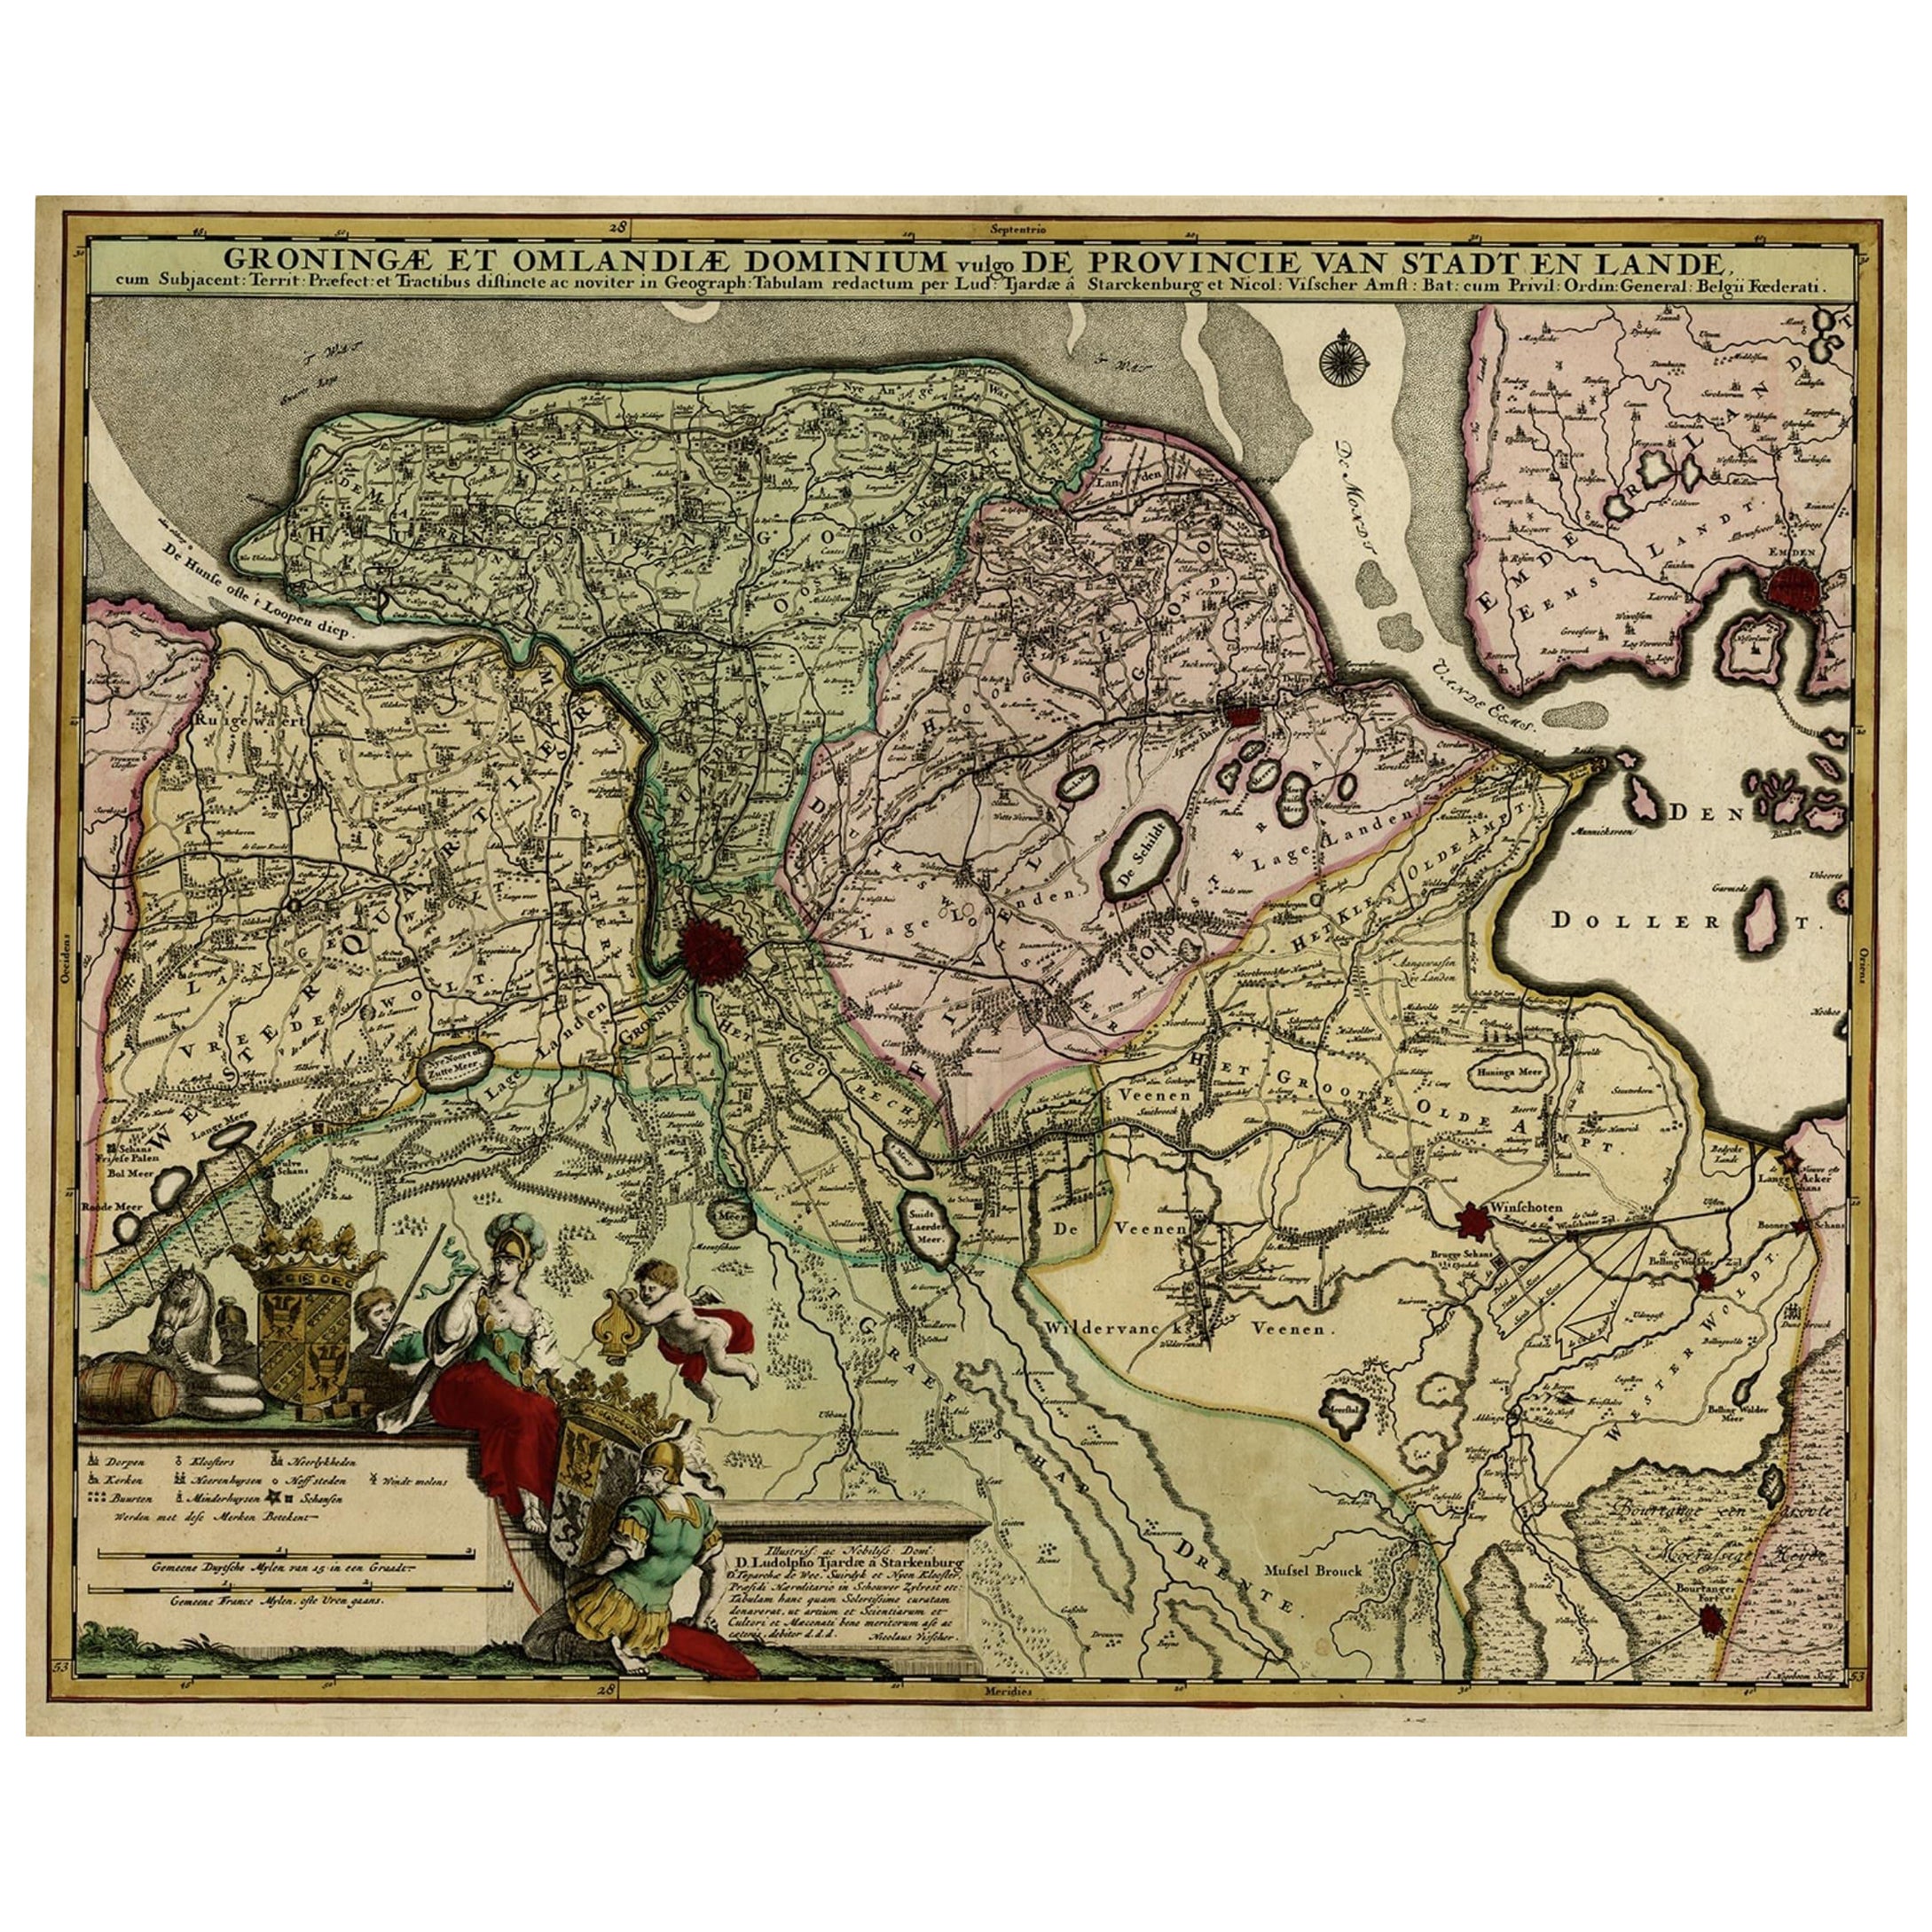 Antike handkolorierte Karte der niederländischen Provinz Groningen, in der Grafschaft Emden, um 1680